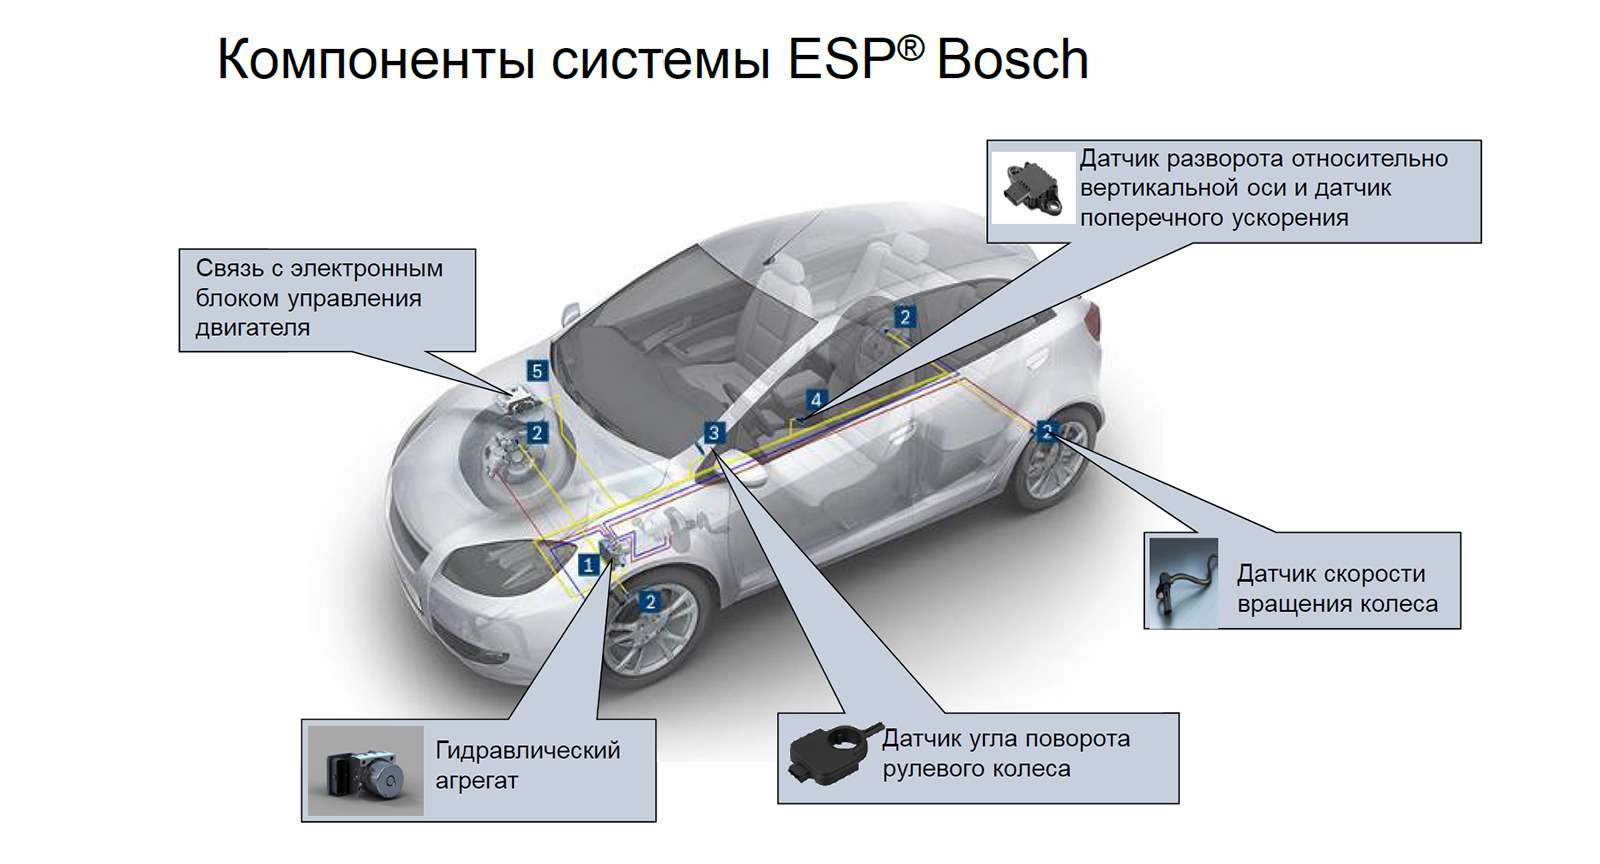 Esp или electronic stability program в машине: что это такое и как работает